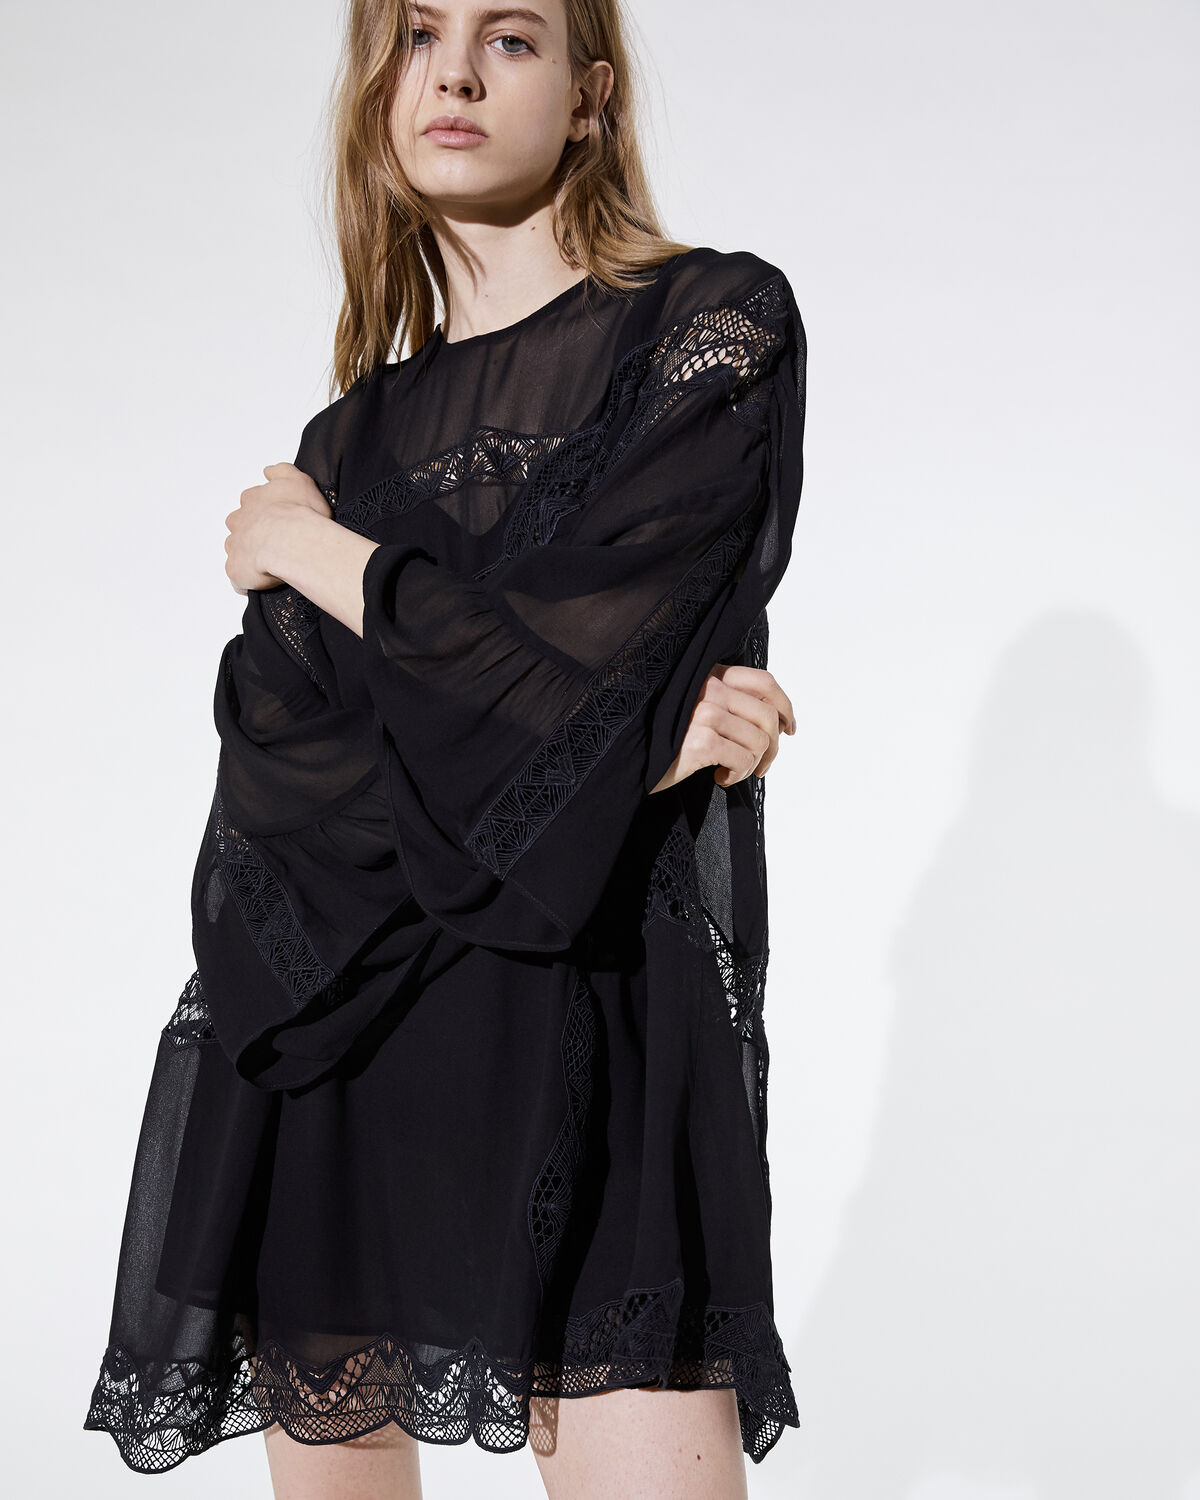 Farila Dress Black by IRO Paris